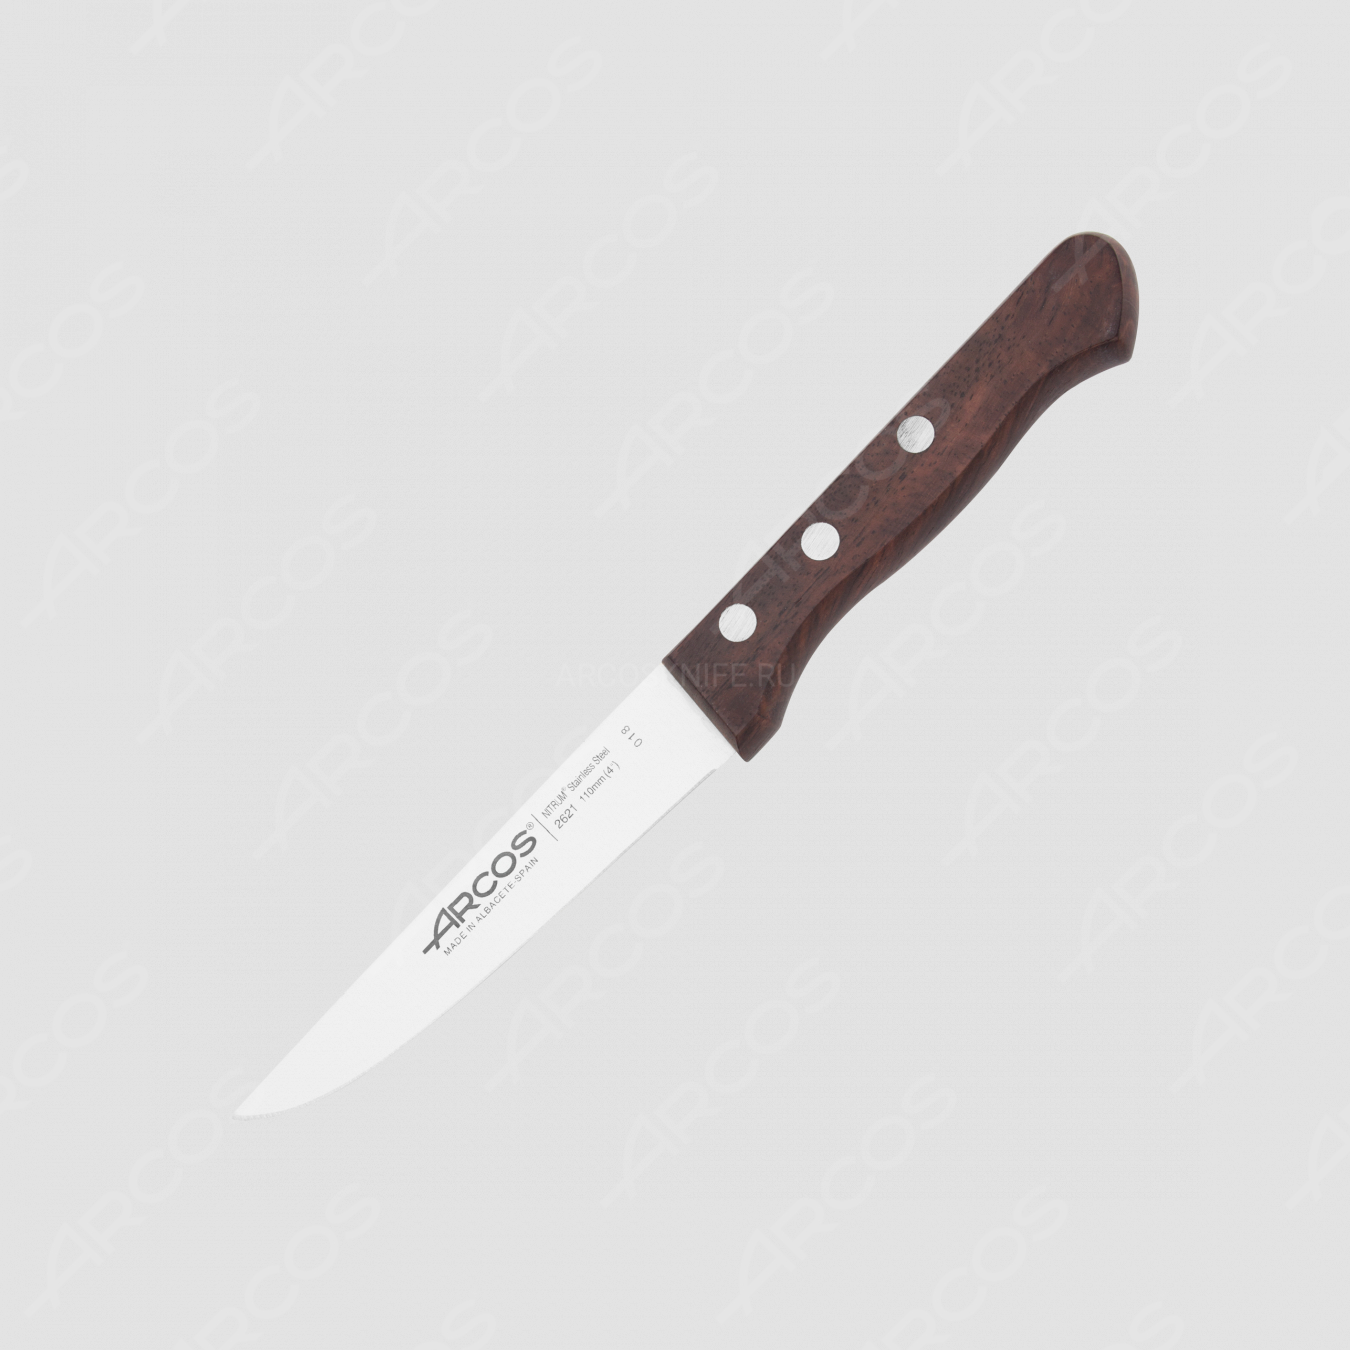 Нож кухонный 11 см, серия Atlantico, ARCOS, Испания